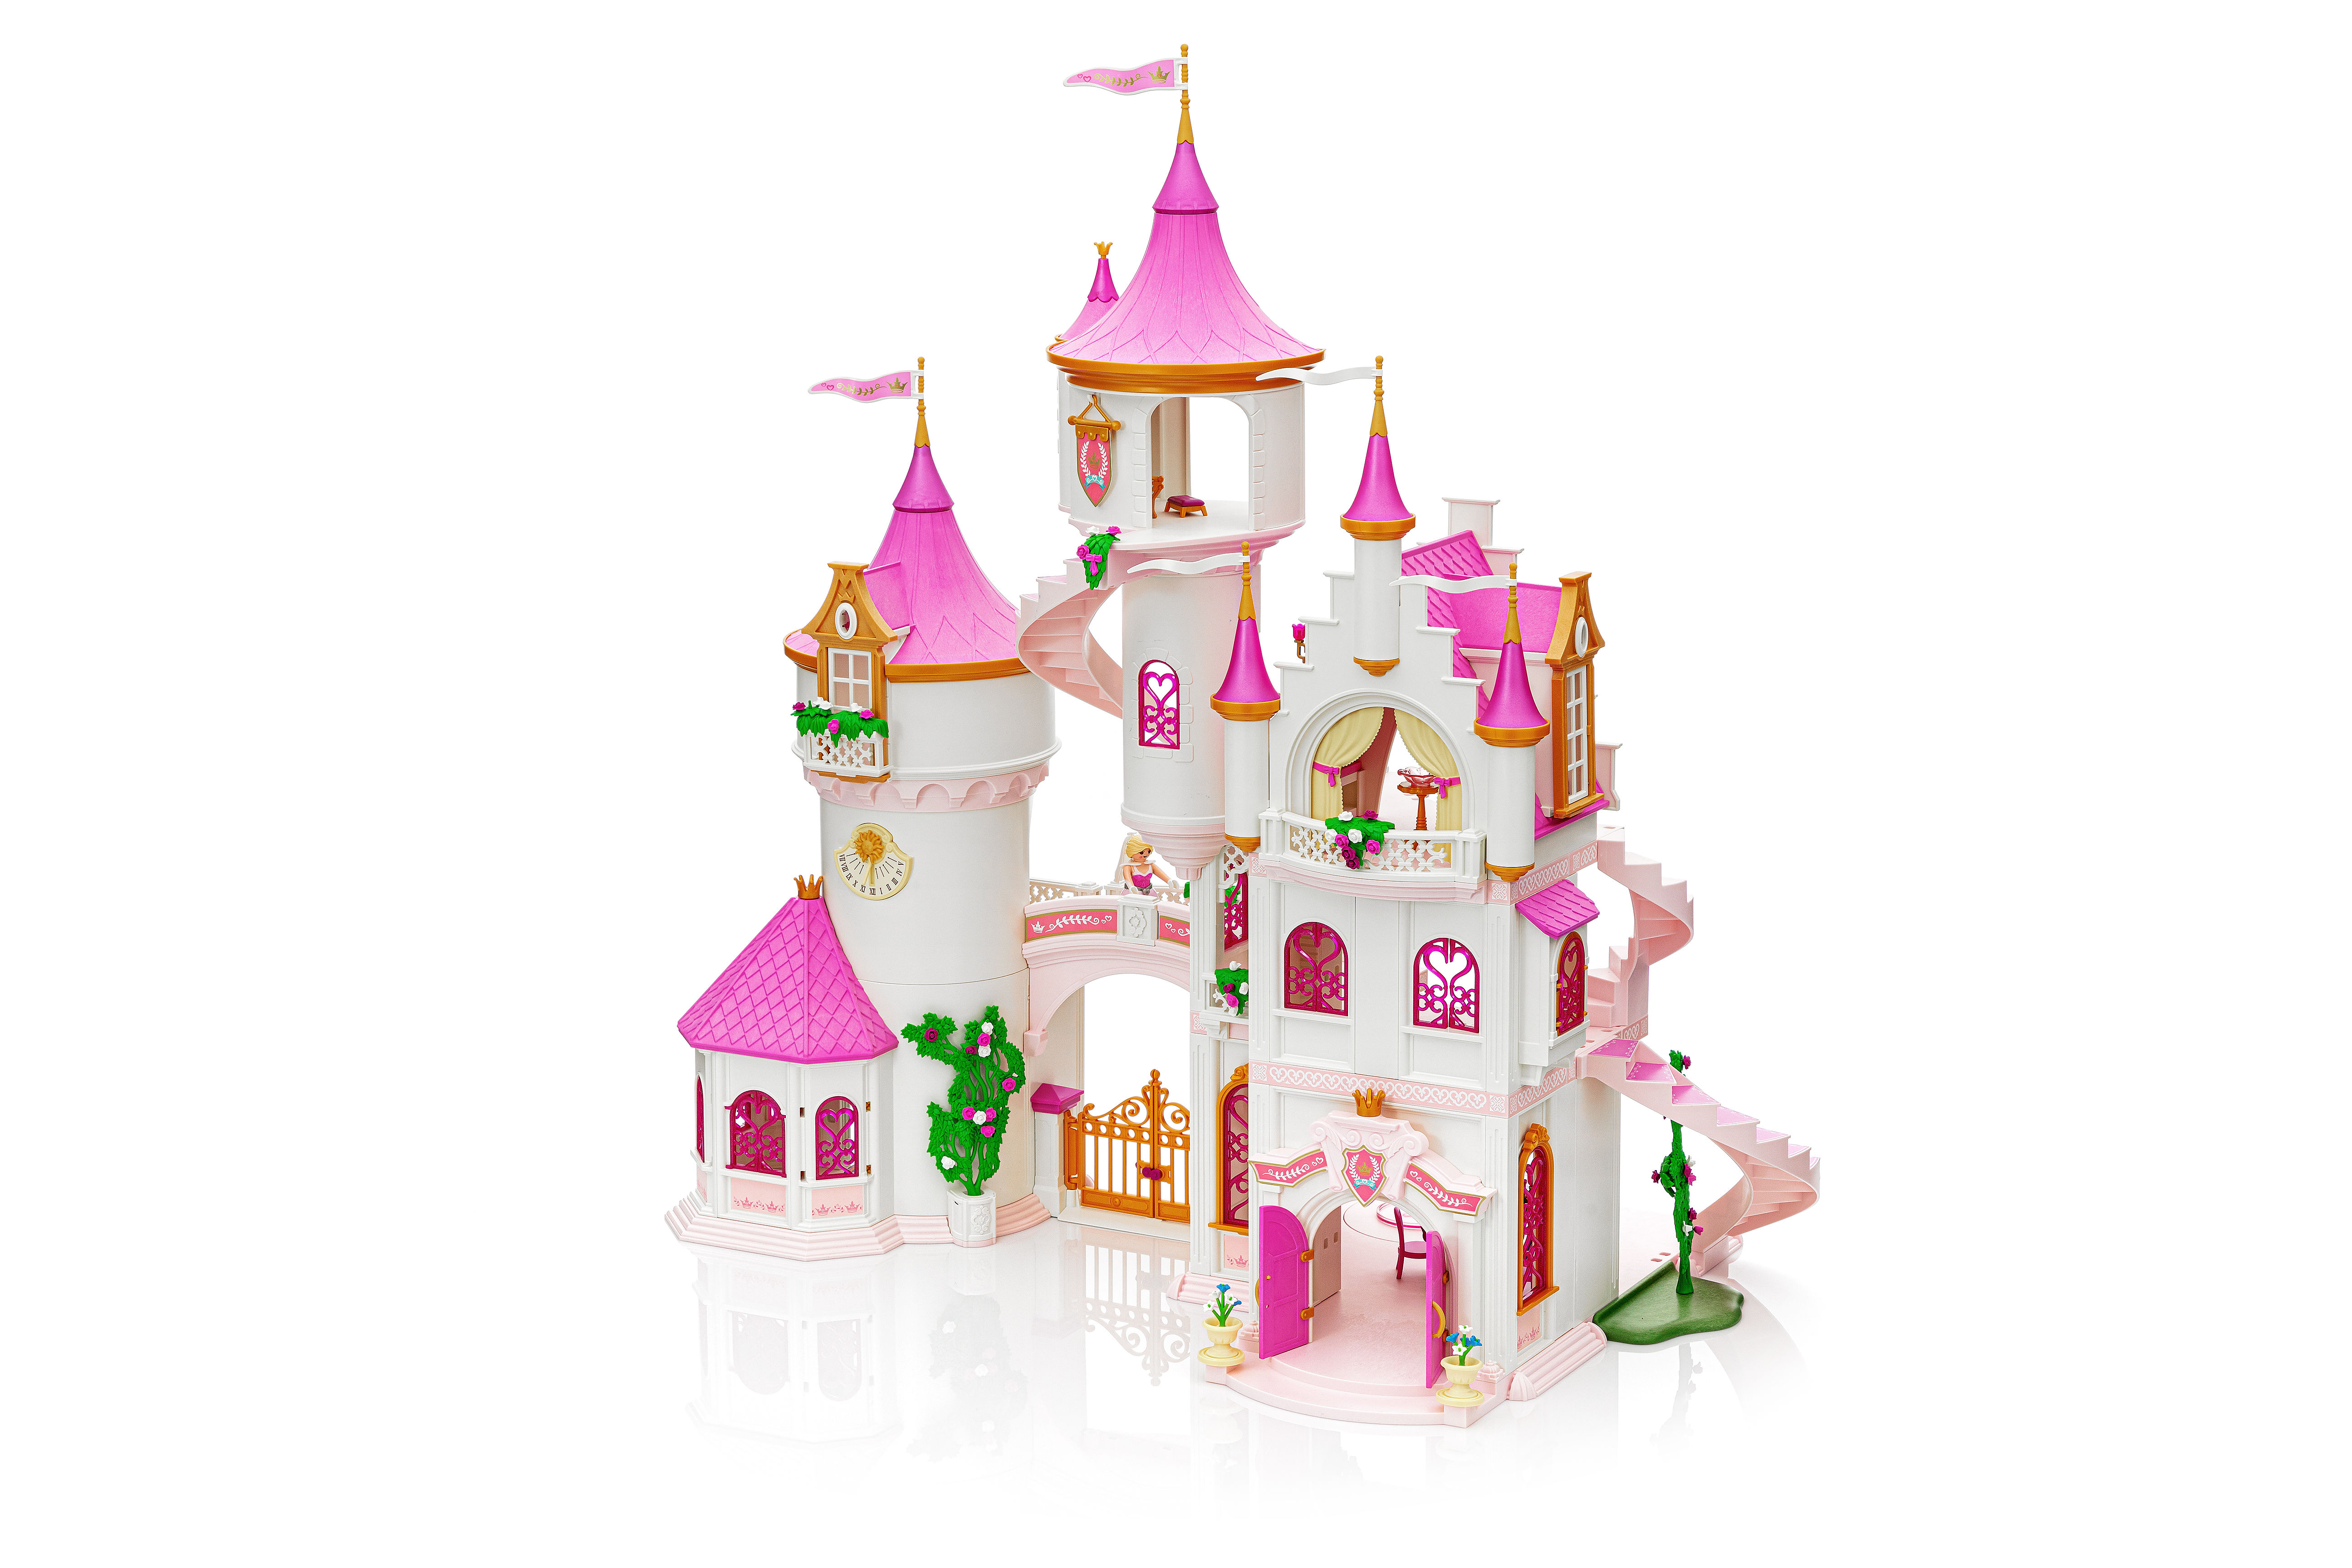 Large Princess Castle - 70447